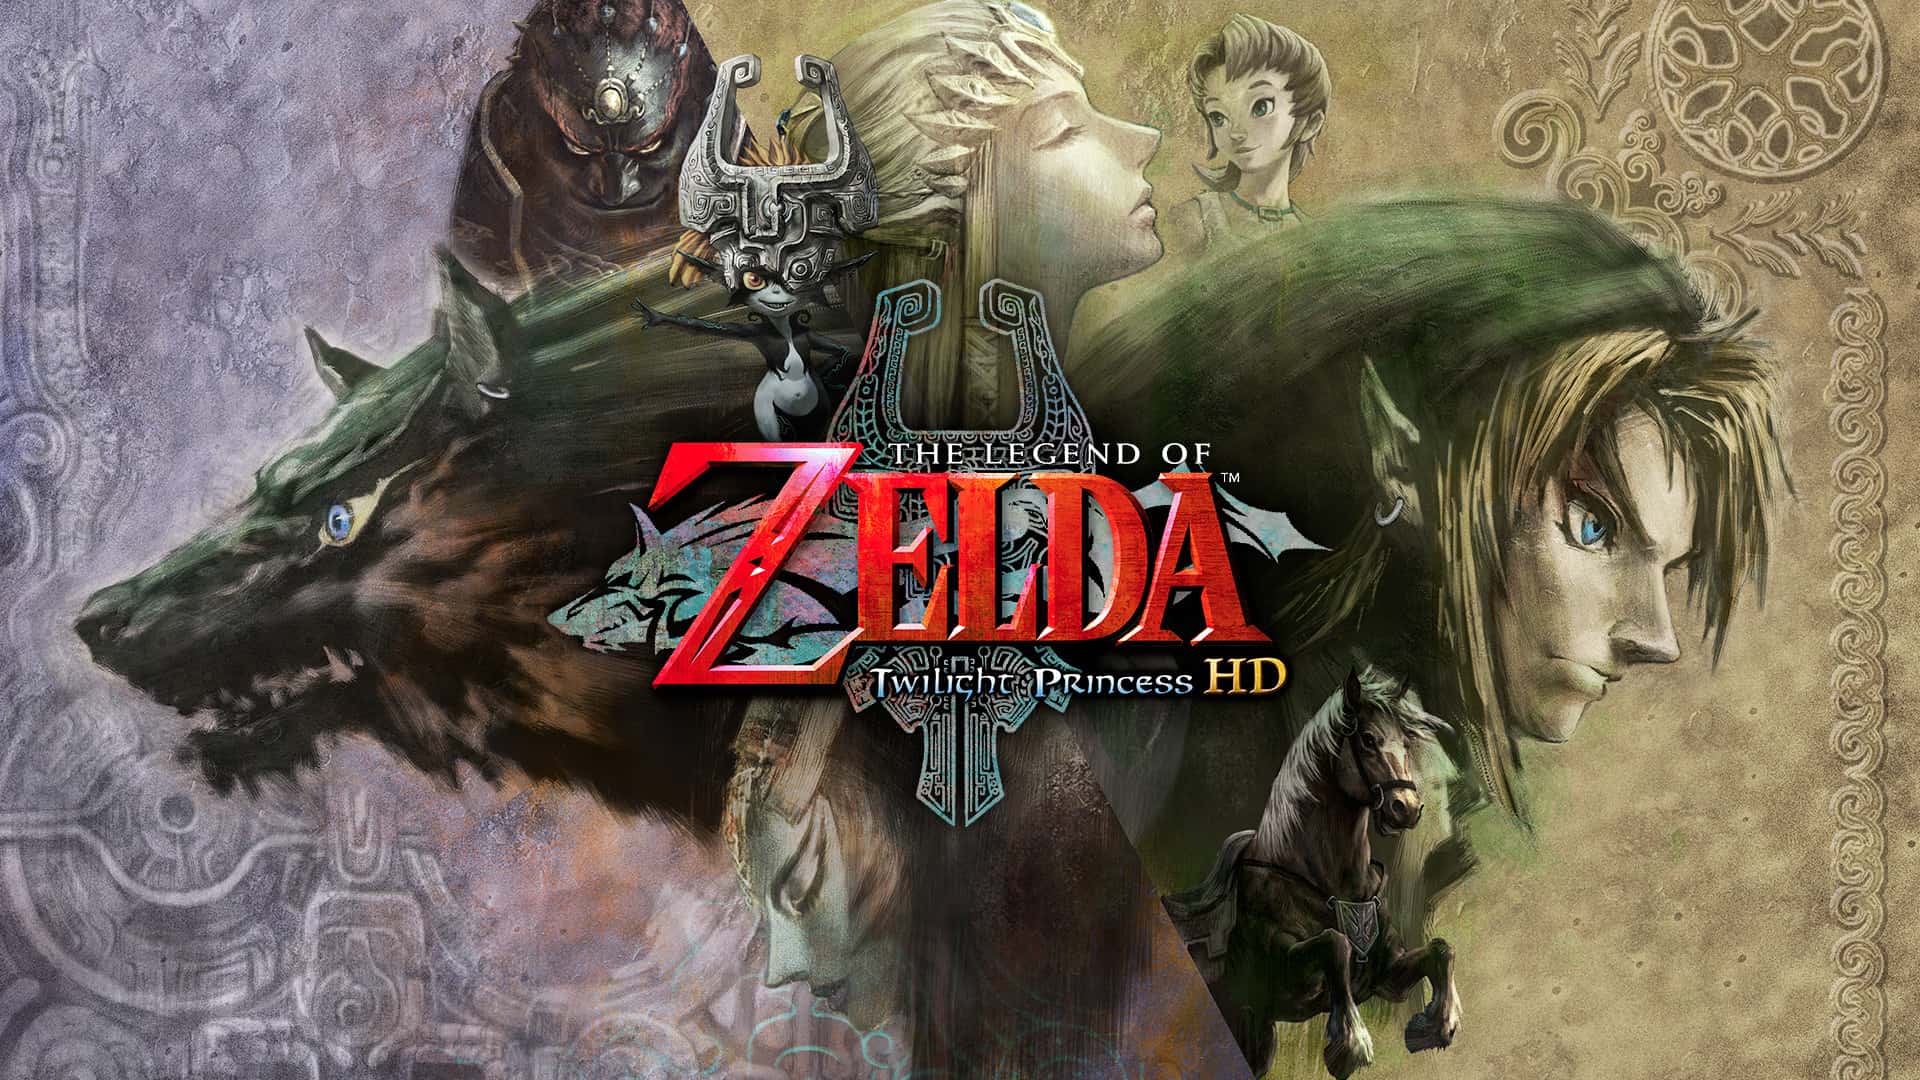 Best Zelda Games - The Legend of Zelda - Twilight Princess